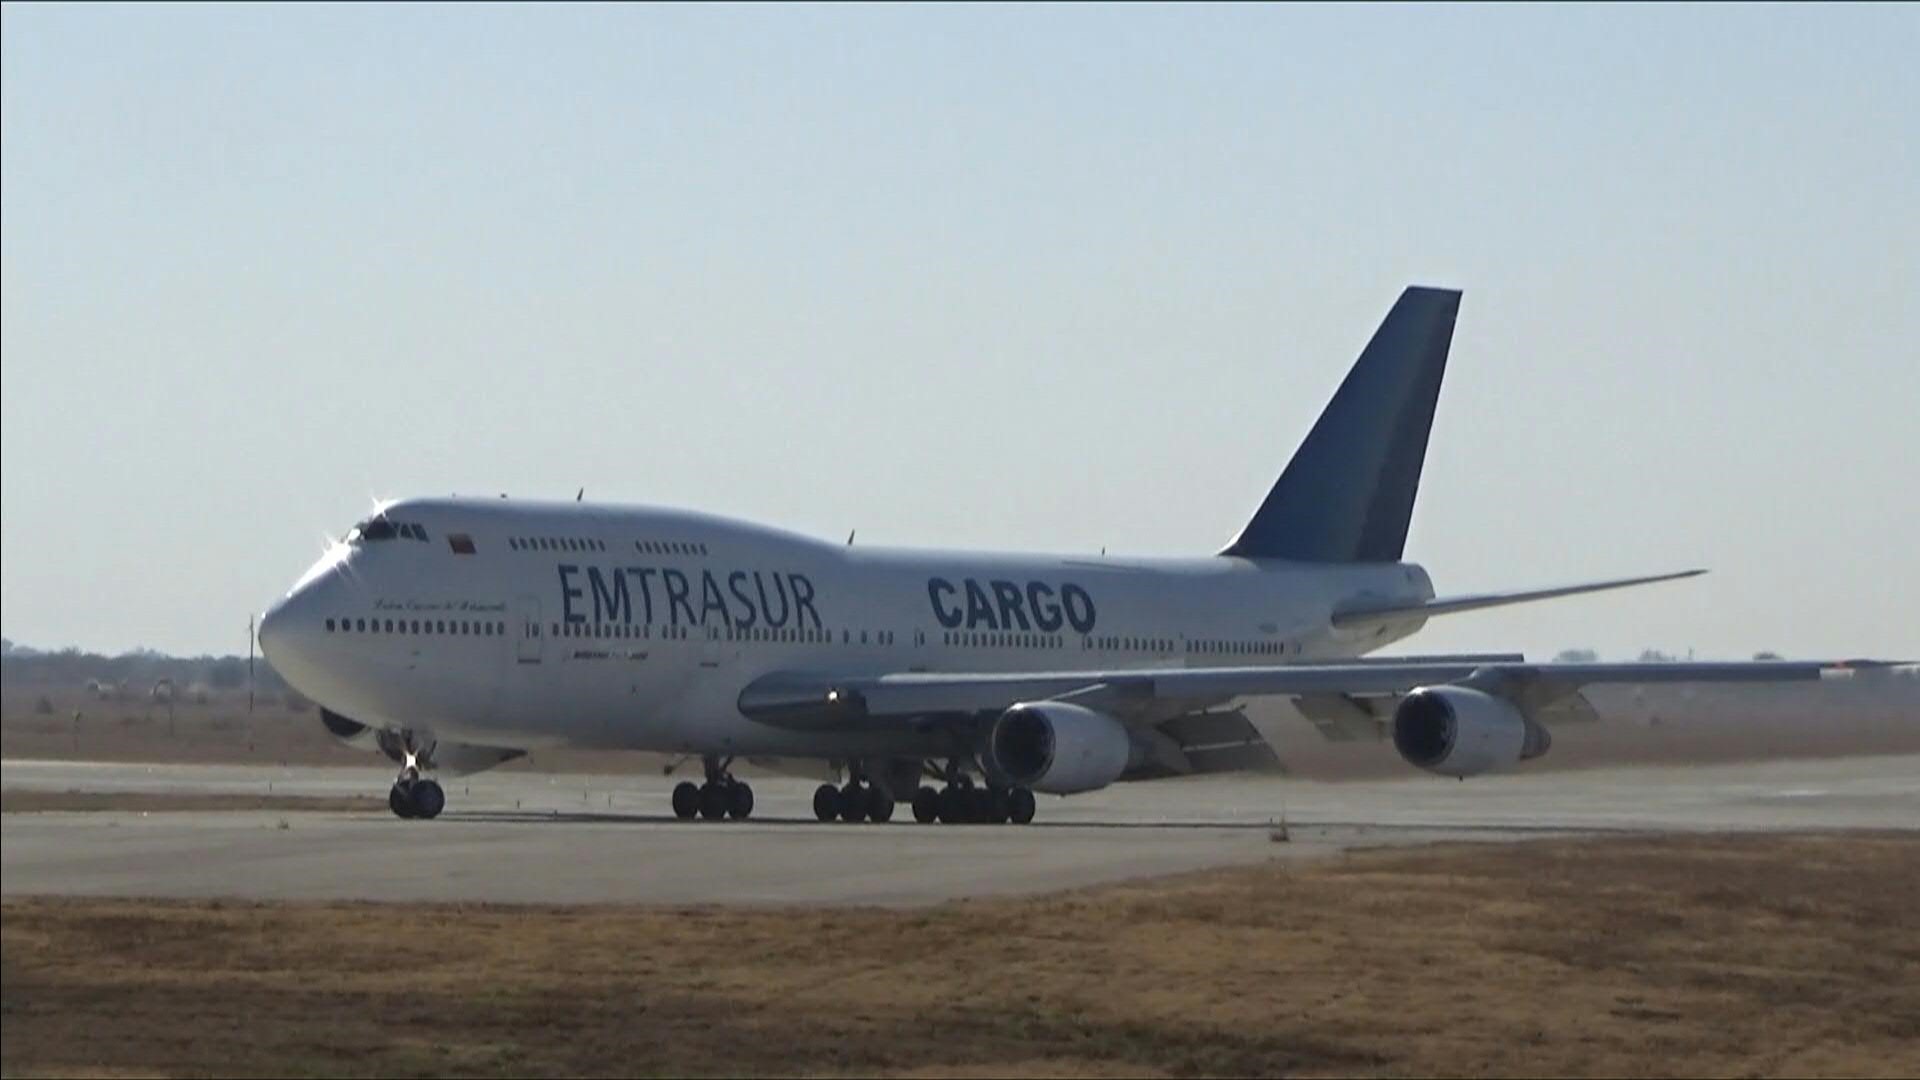 El Boeing 747 de Emtrasur, investigado por nexos con el terrorismo, sigue retenido en Buenos Aires